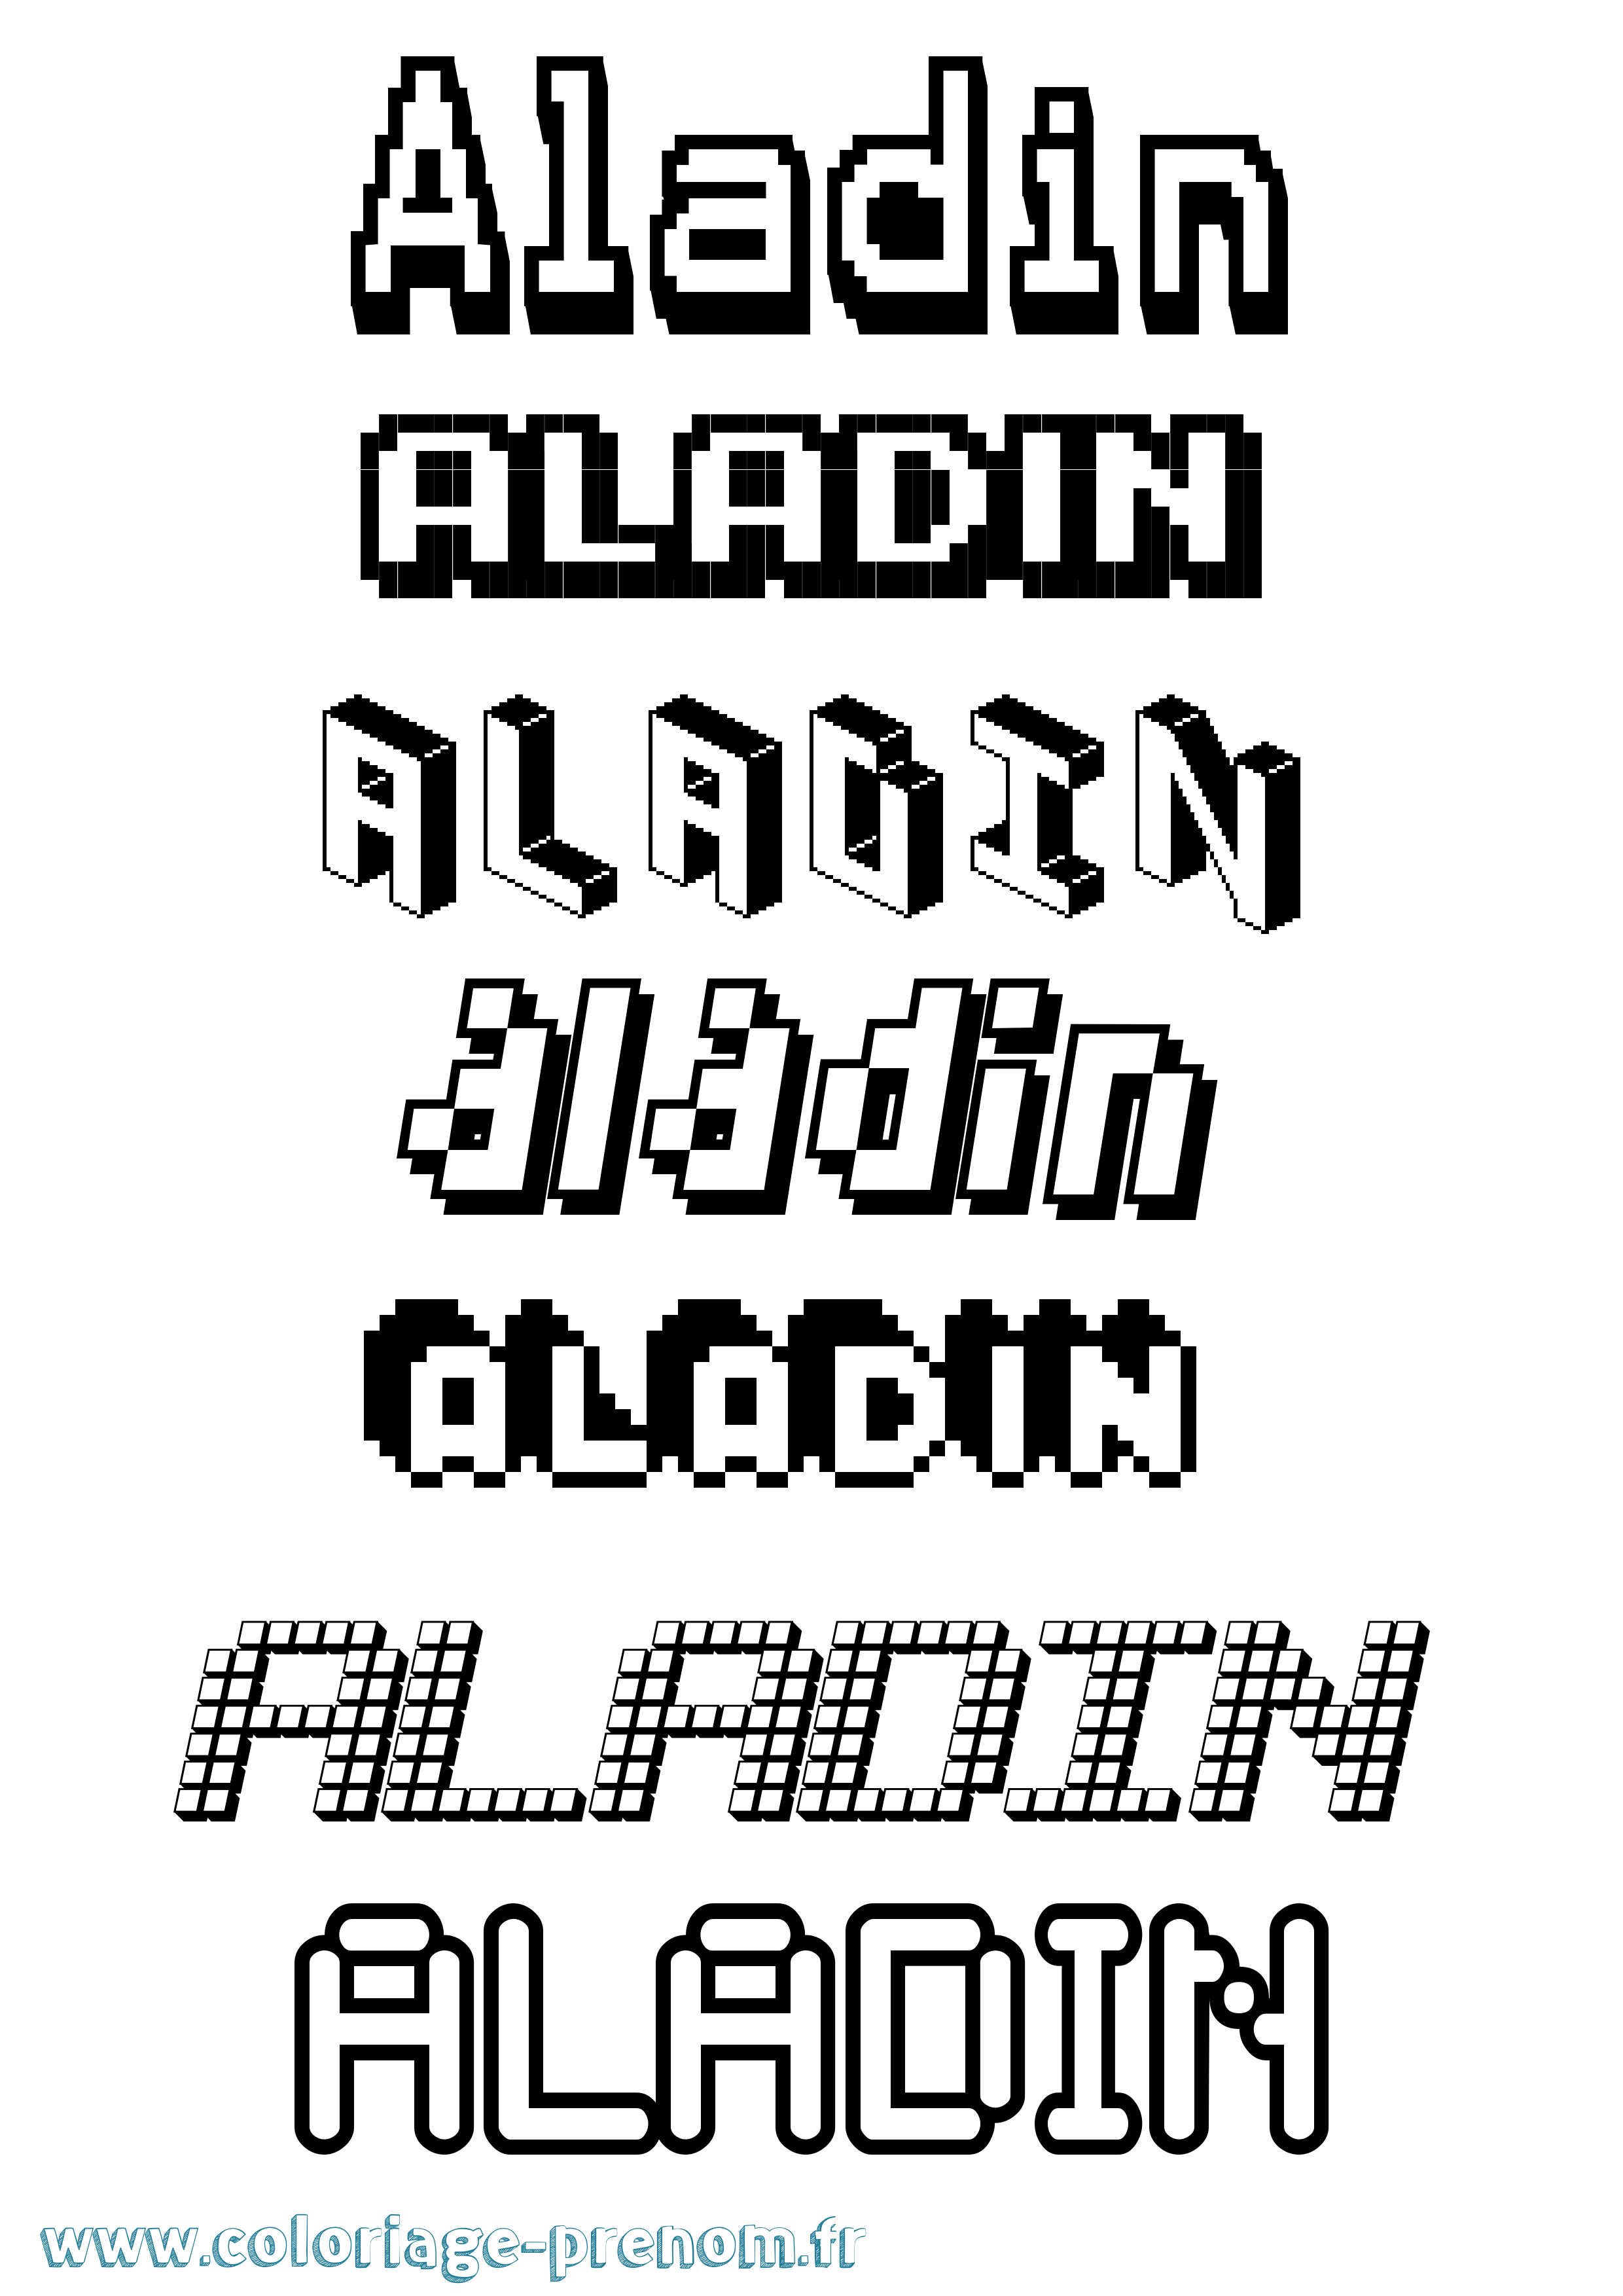 Coloriage prénom Aladin Pixel